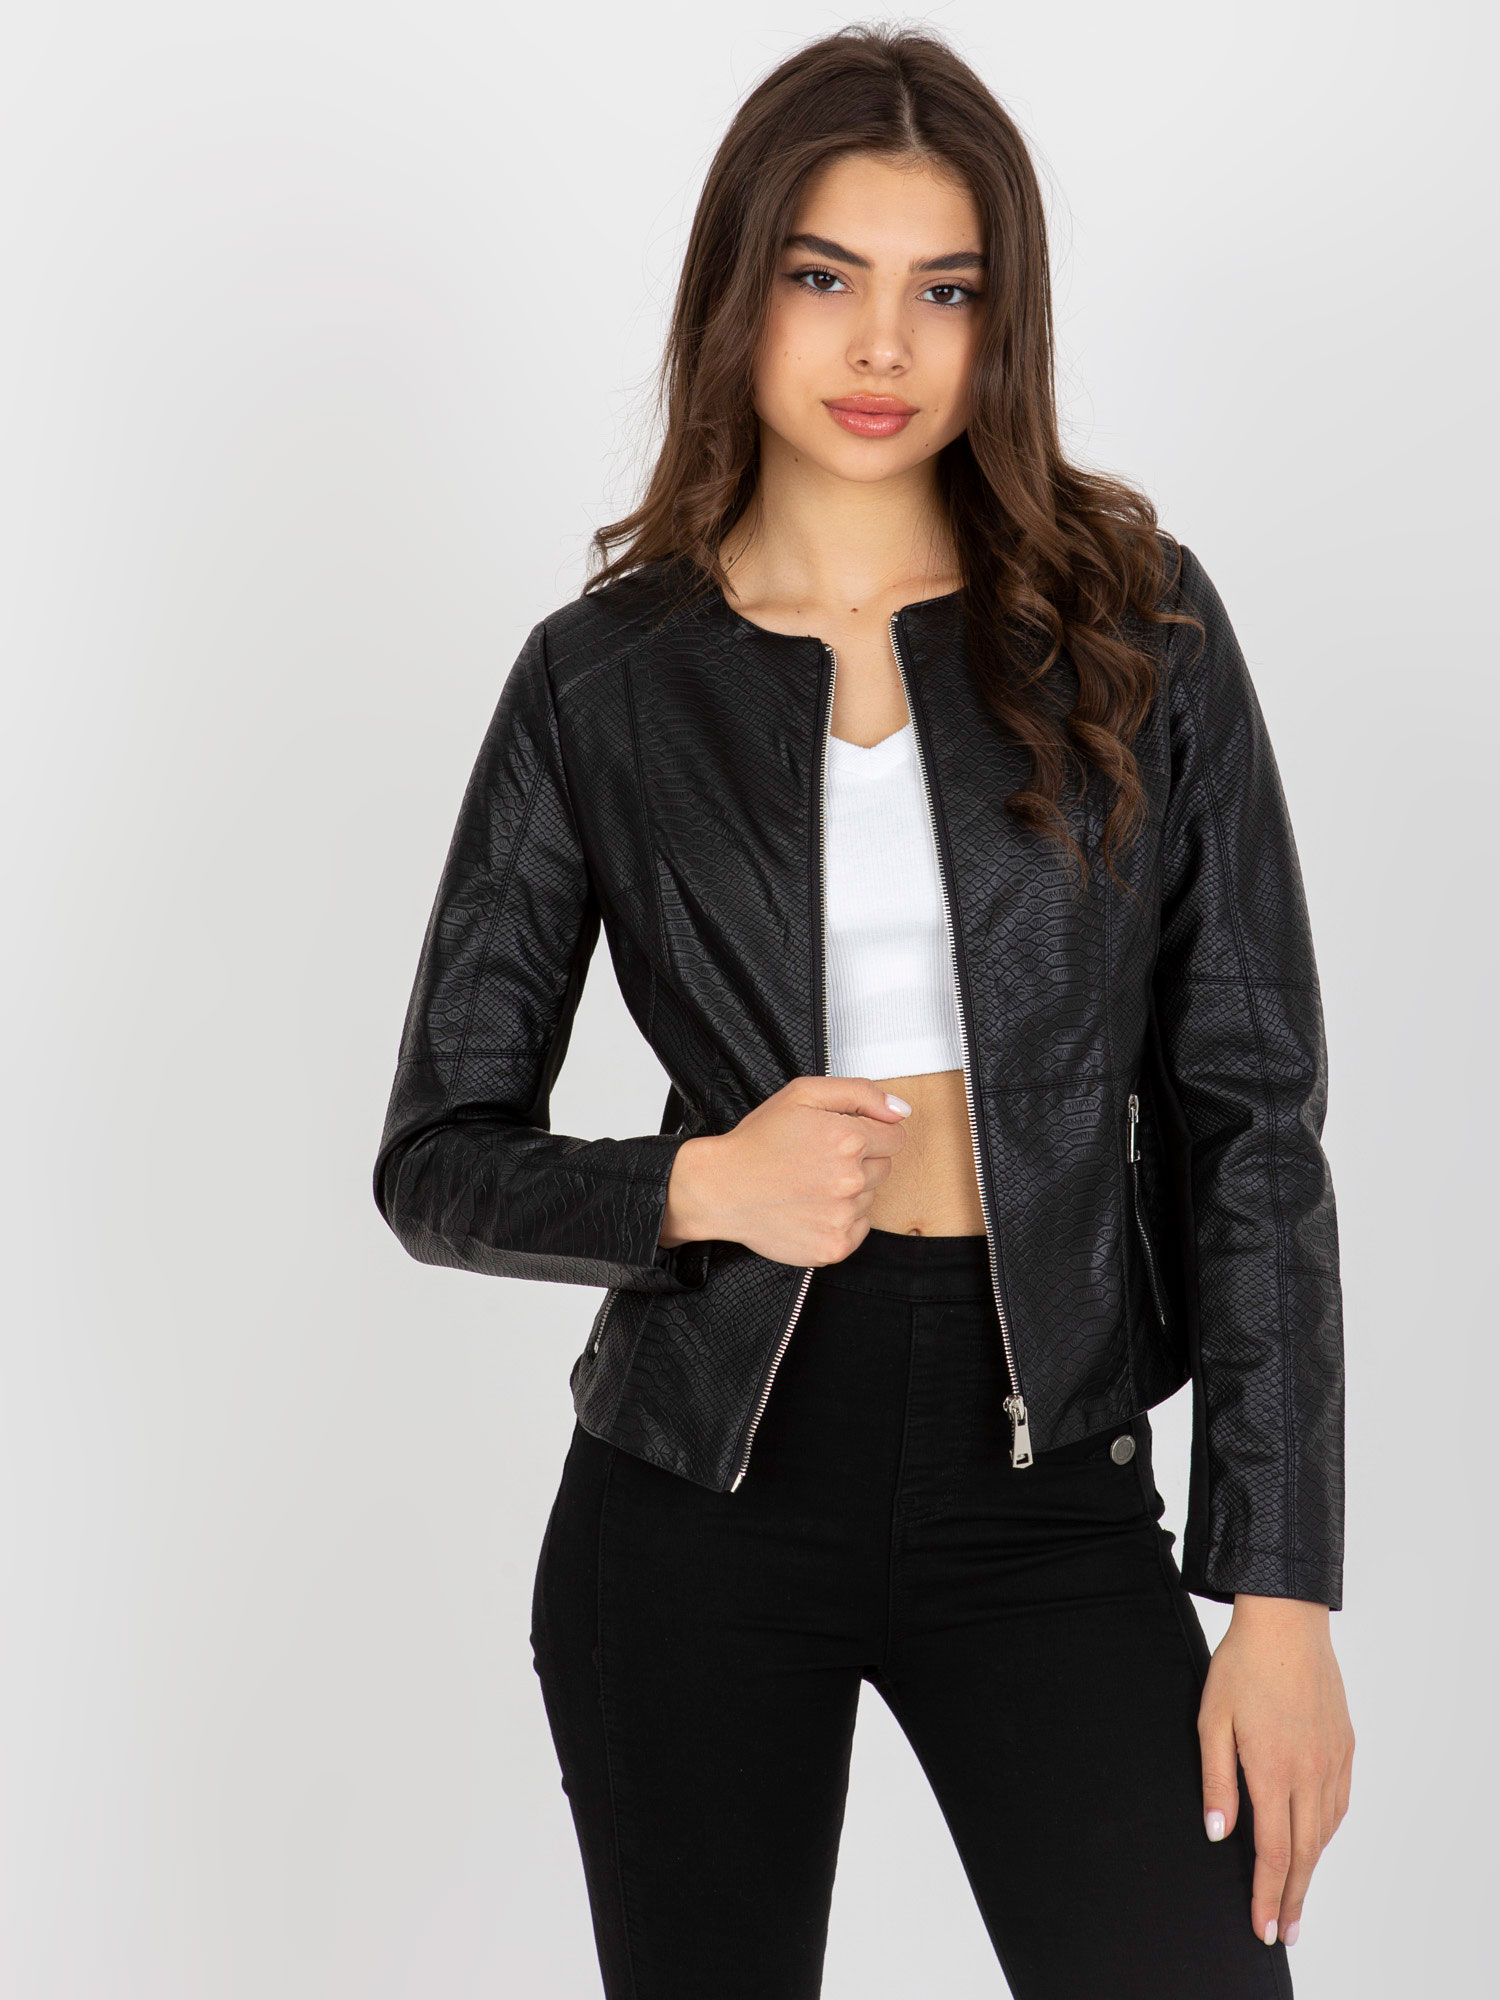 Čierna dámska vzorovaná koženková bunda NM-KR-DA-0526.55-black Veľkosť: XL